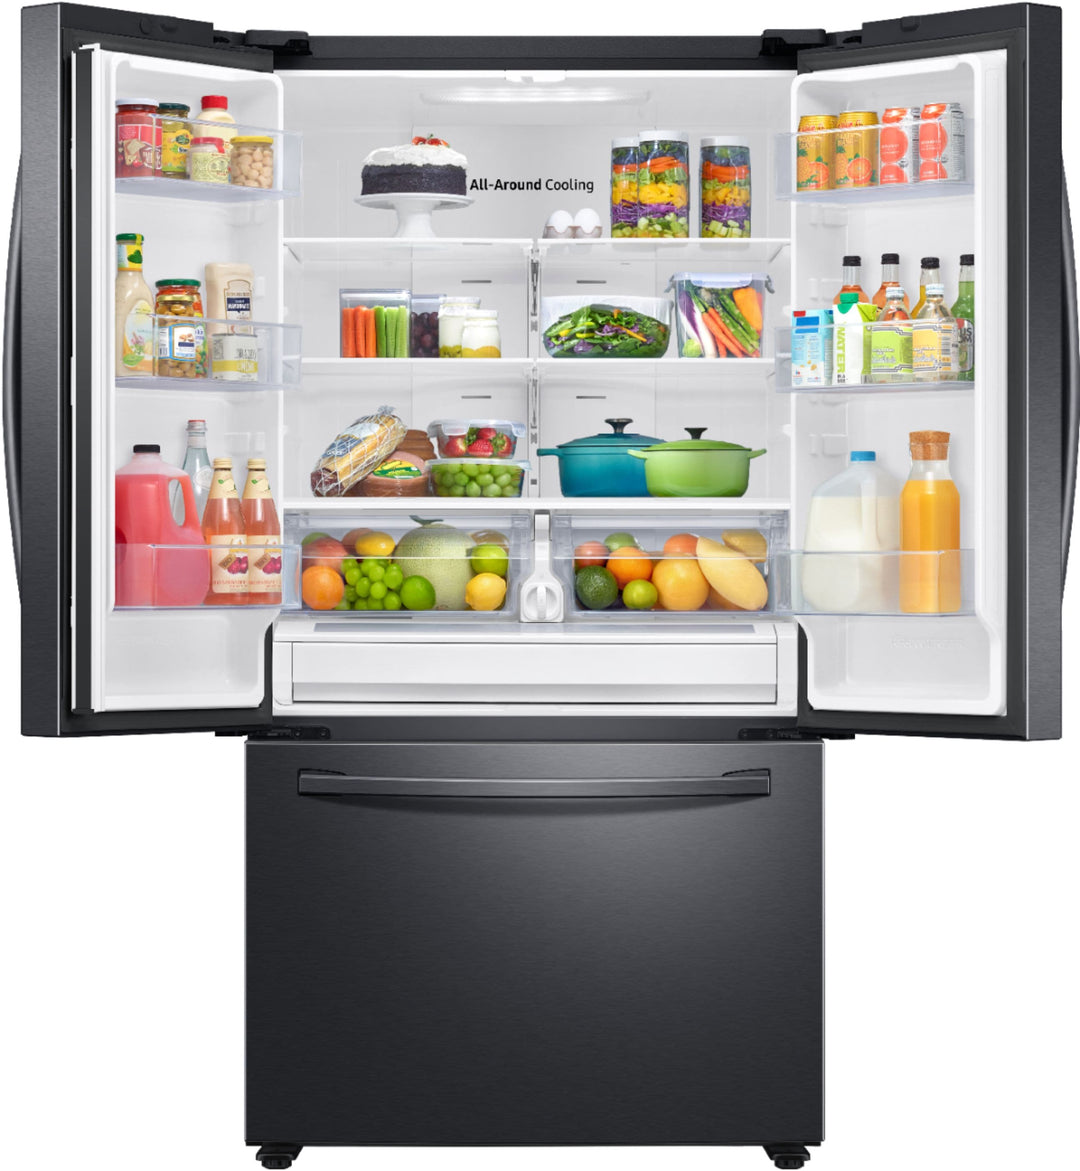 Samsung - 28 cu. ft. Large Capacity 3-Door French Door Refrigerator - Black stainless steel_8